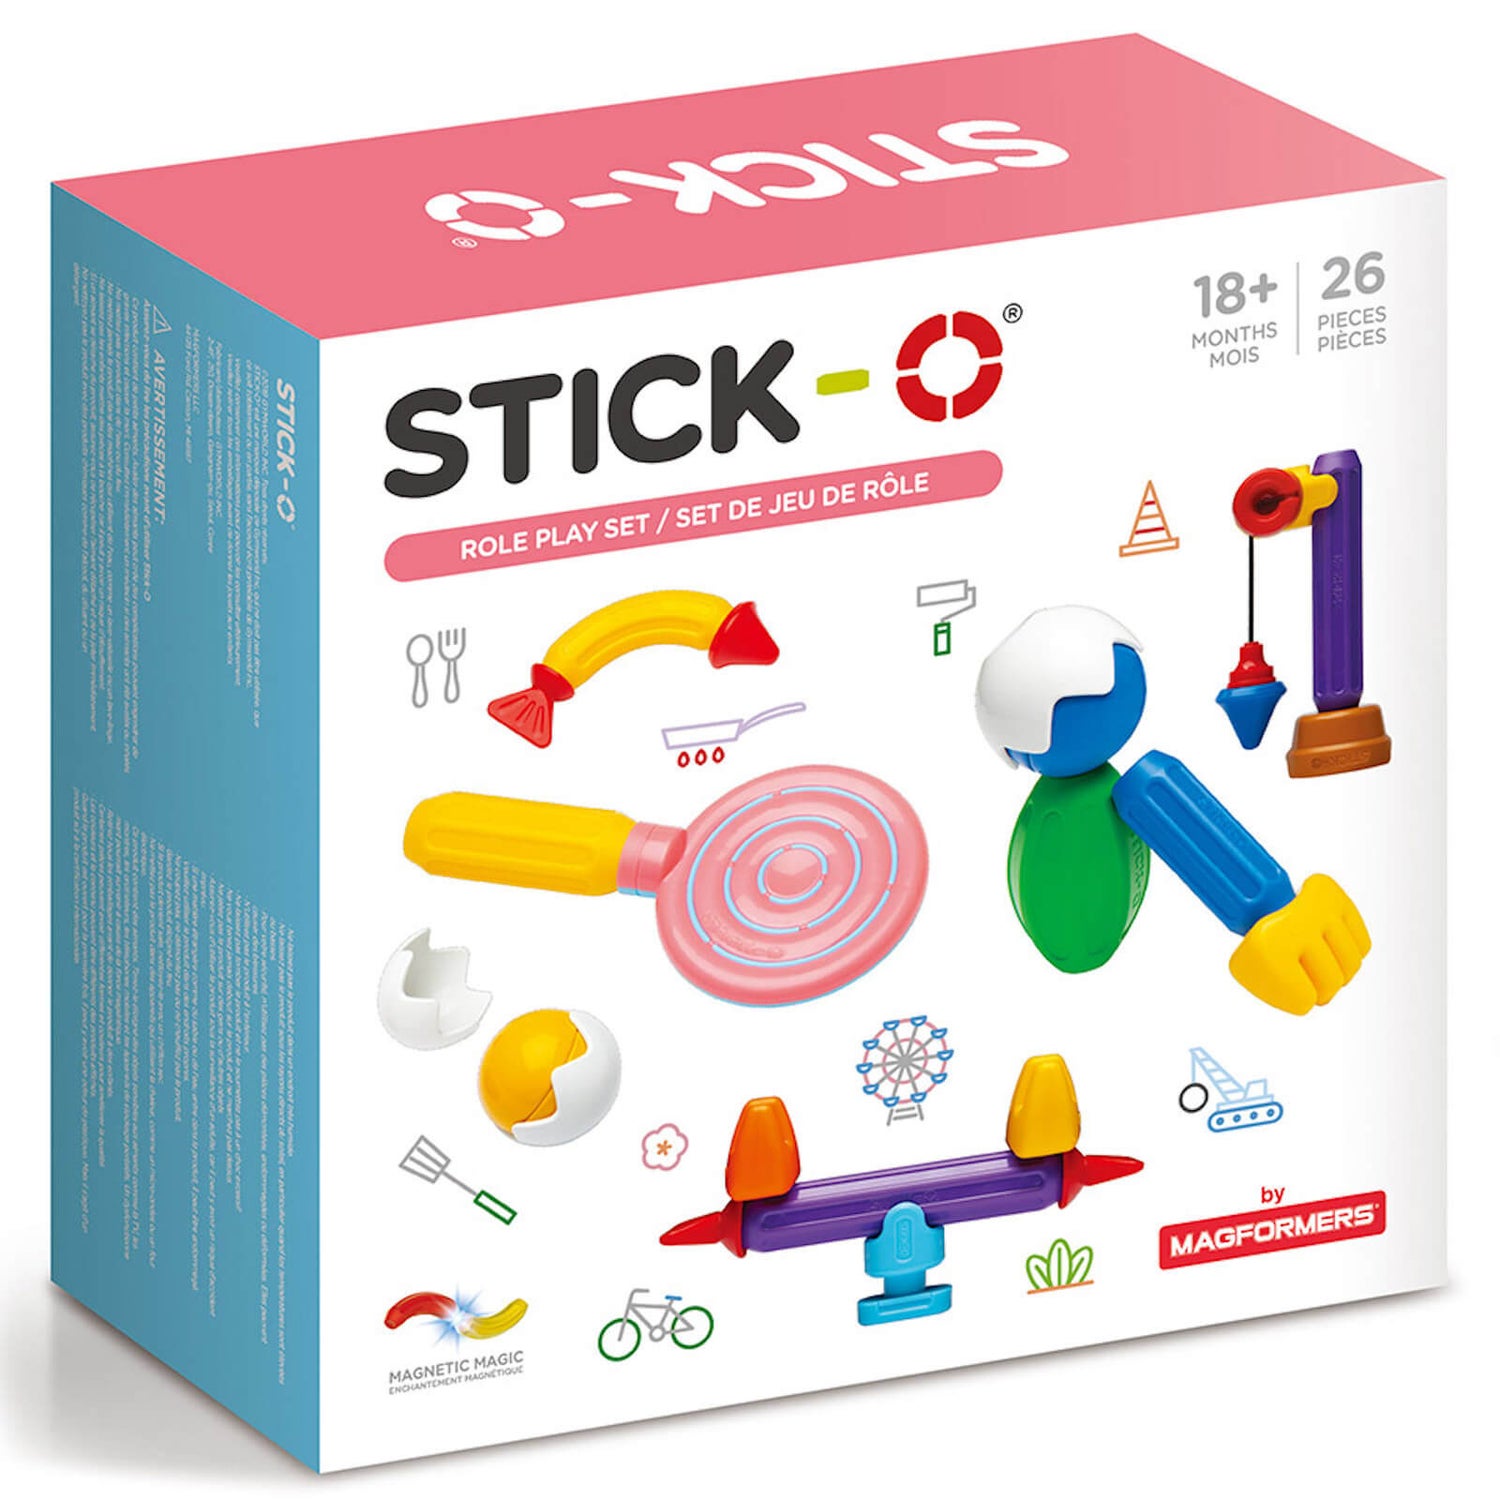 Stick-O - Jeu de rôle magnétique (26 pièces)